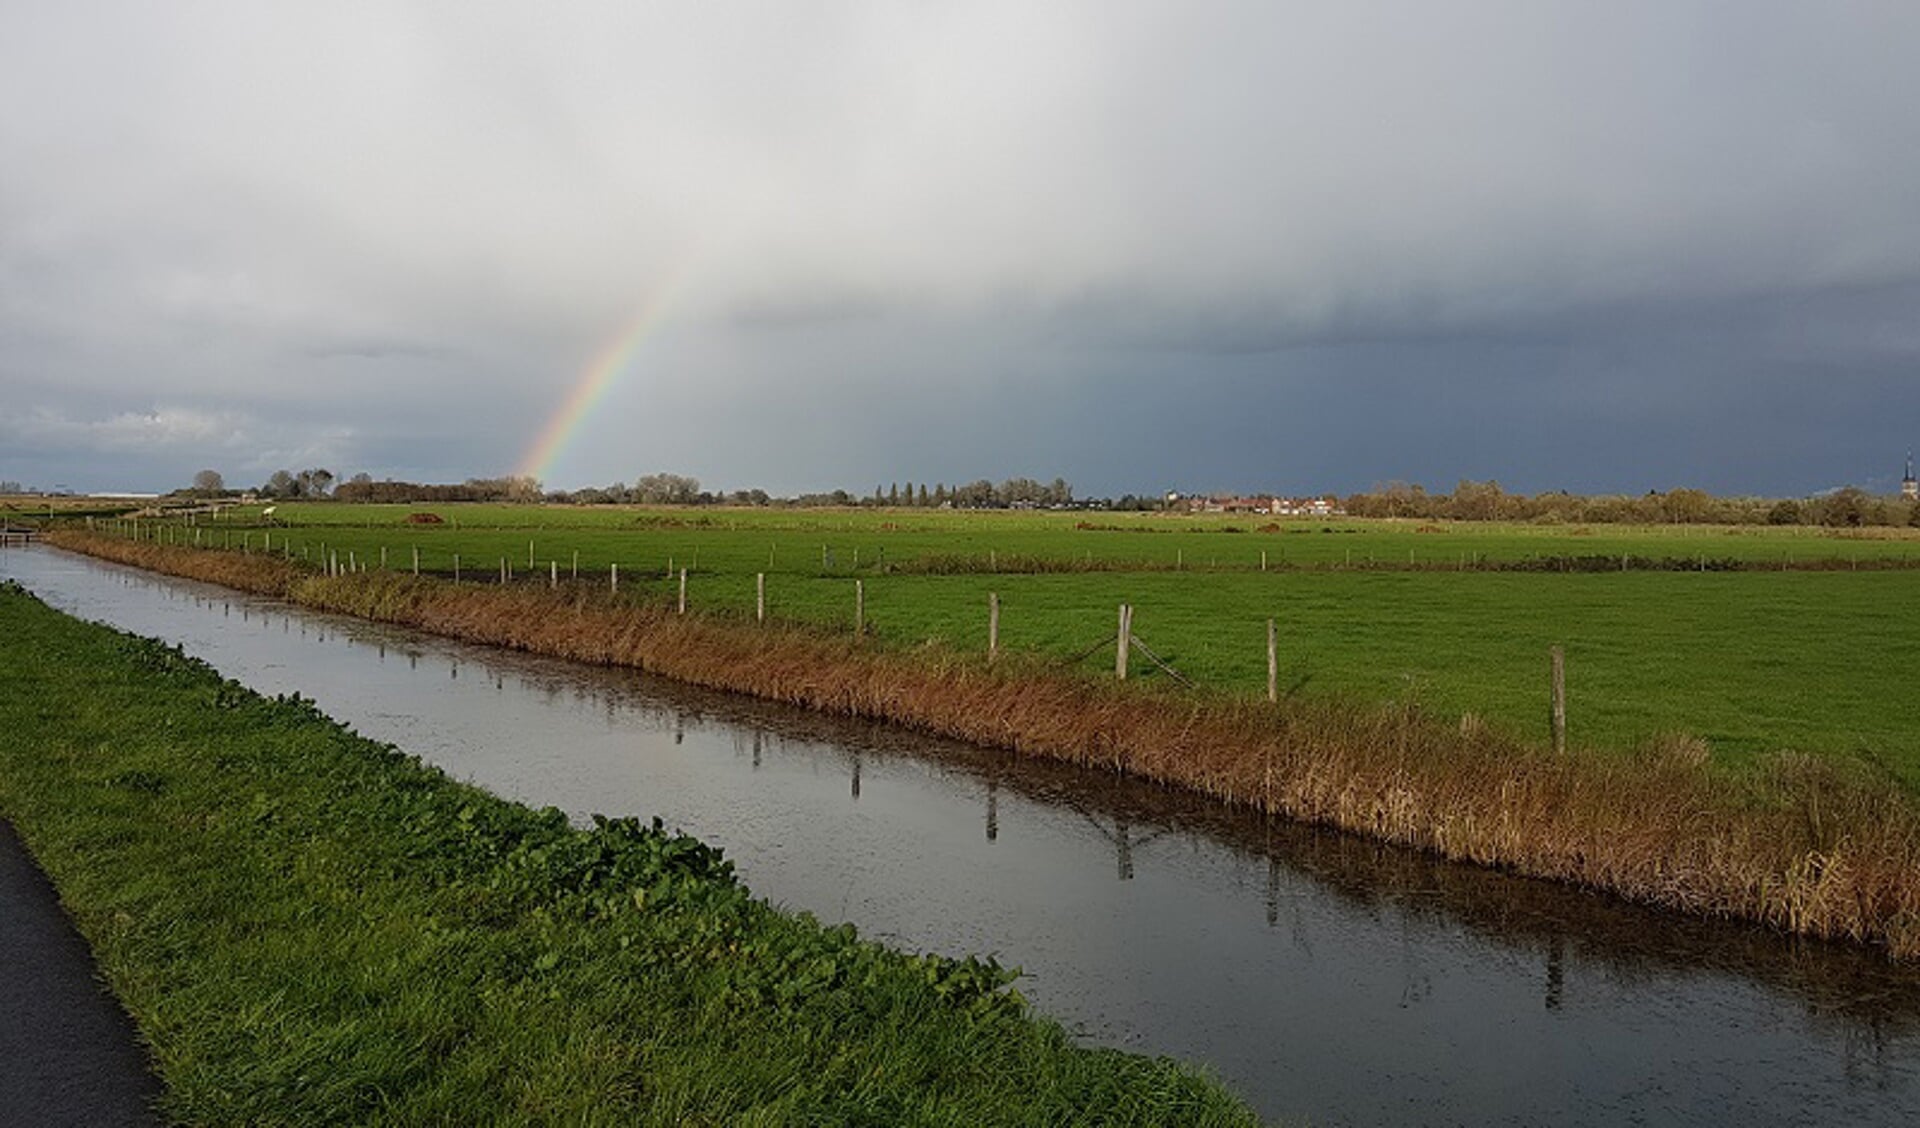 Buienwolk met regenboog boven de Haagse Beemden polder